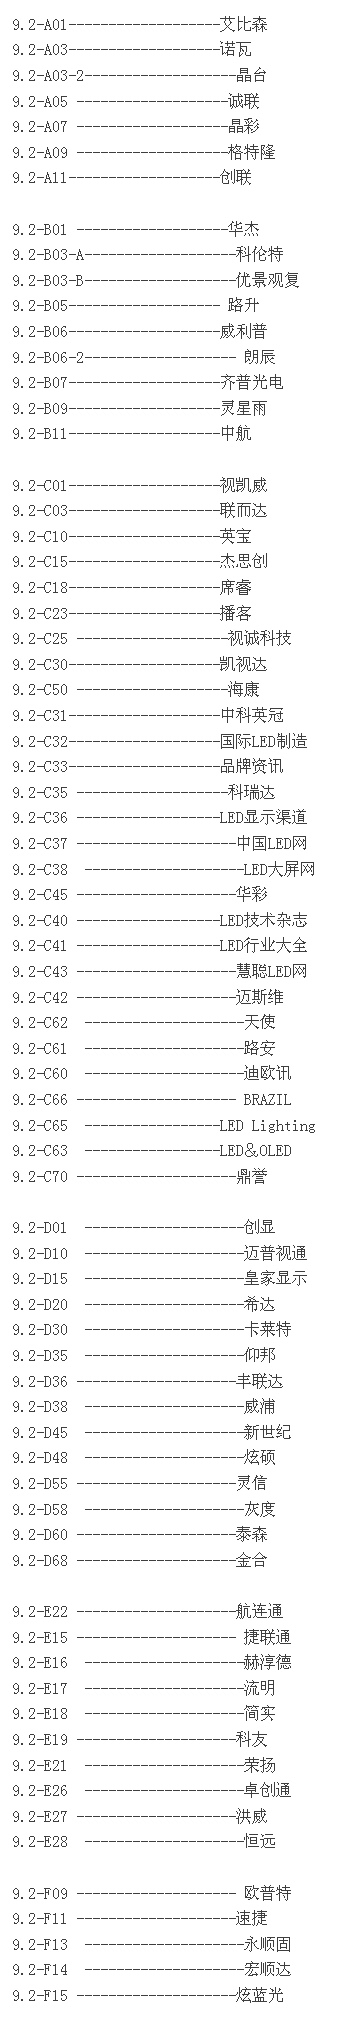 广州国际LED展展位图 精准锁定目标企业 2.png